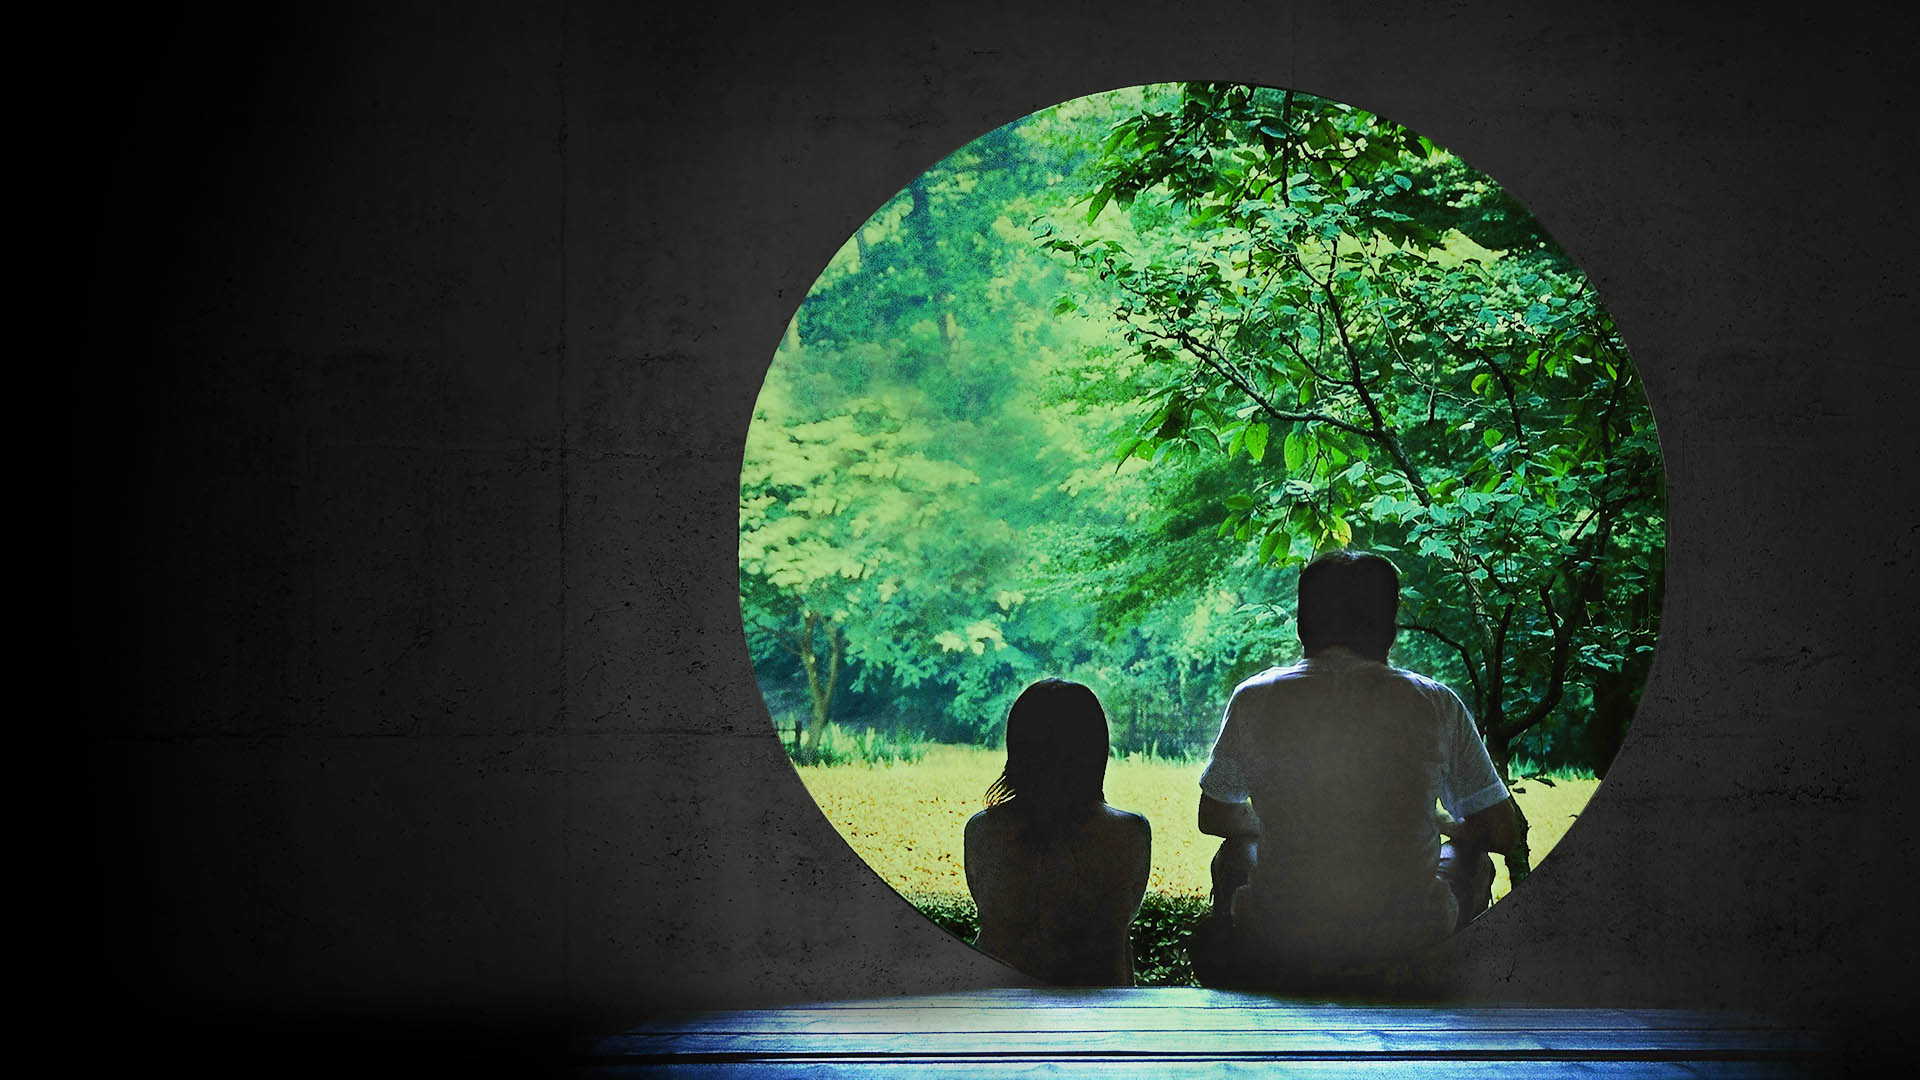 원형 문 앞에 앉아 밖의 초록색 나무를 바라보고 있는 두 사람의 뒷모습